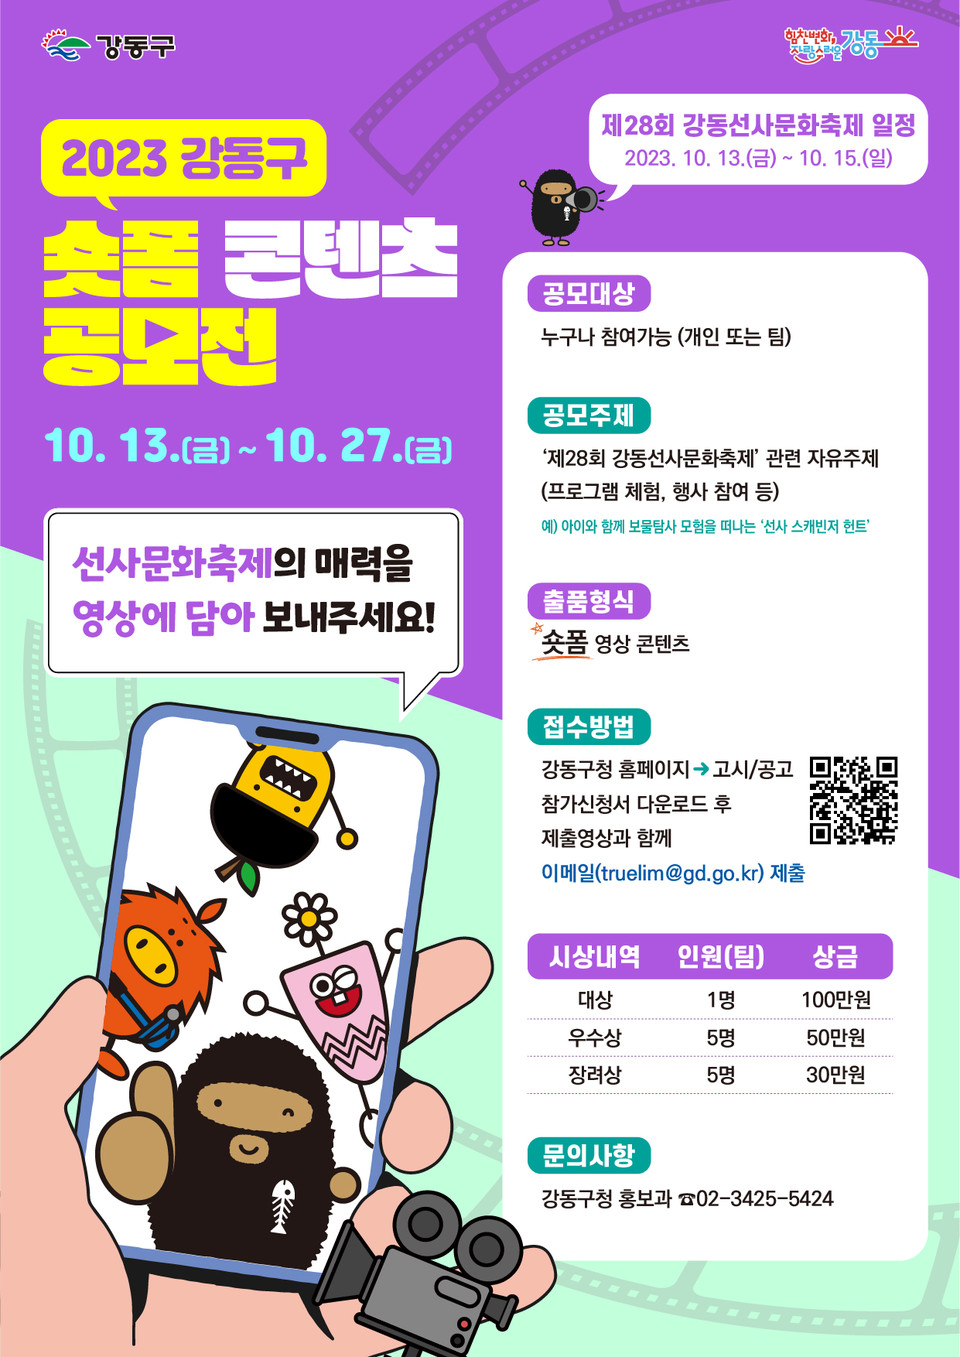 2023 강동구 숏폼 콘텐츠 공모전 홍보 포스터